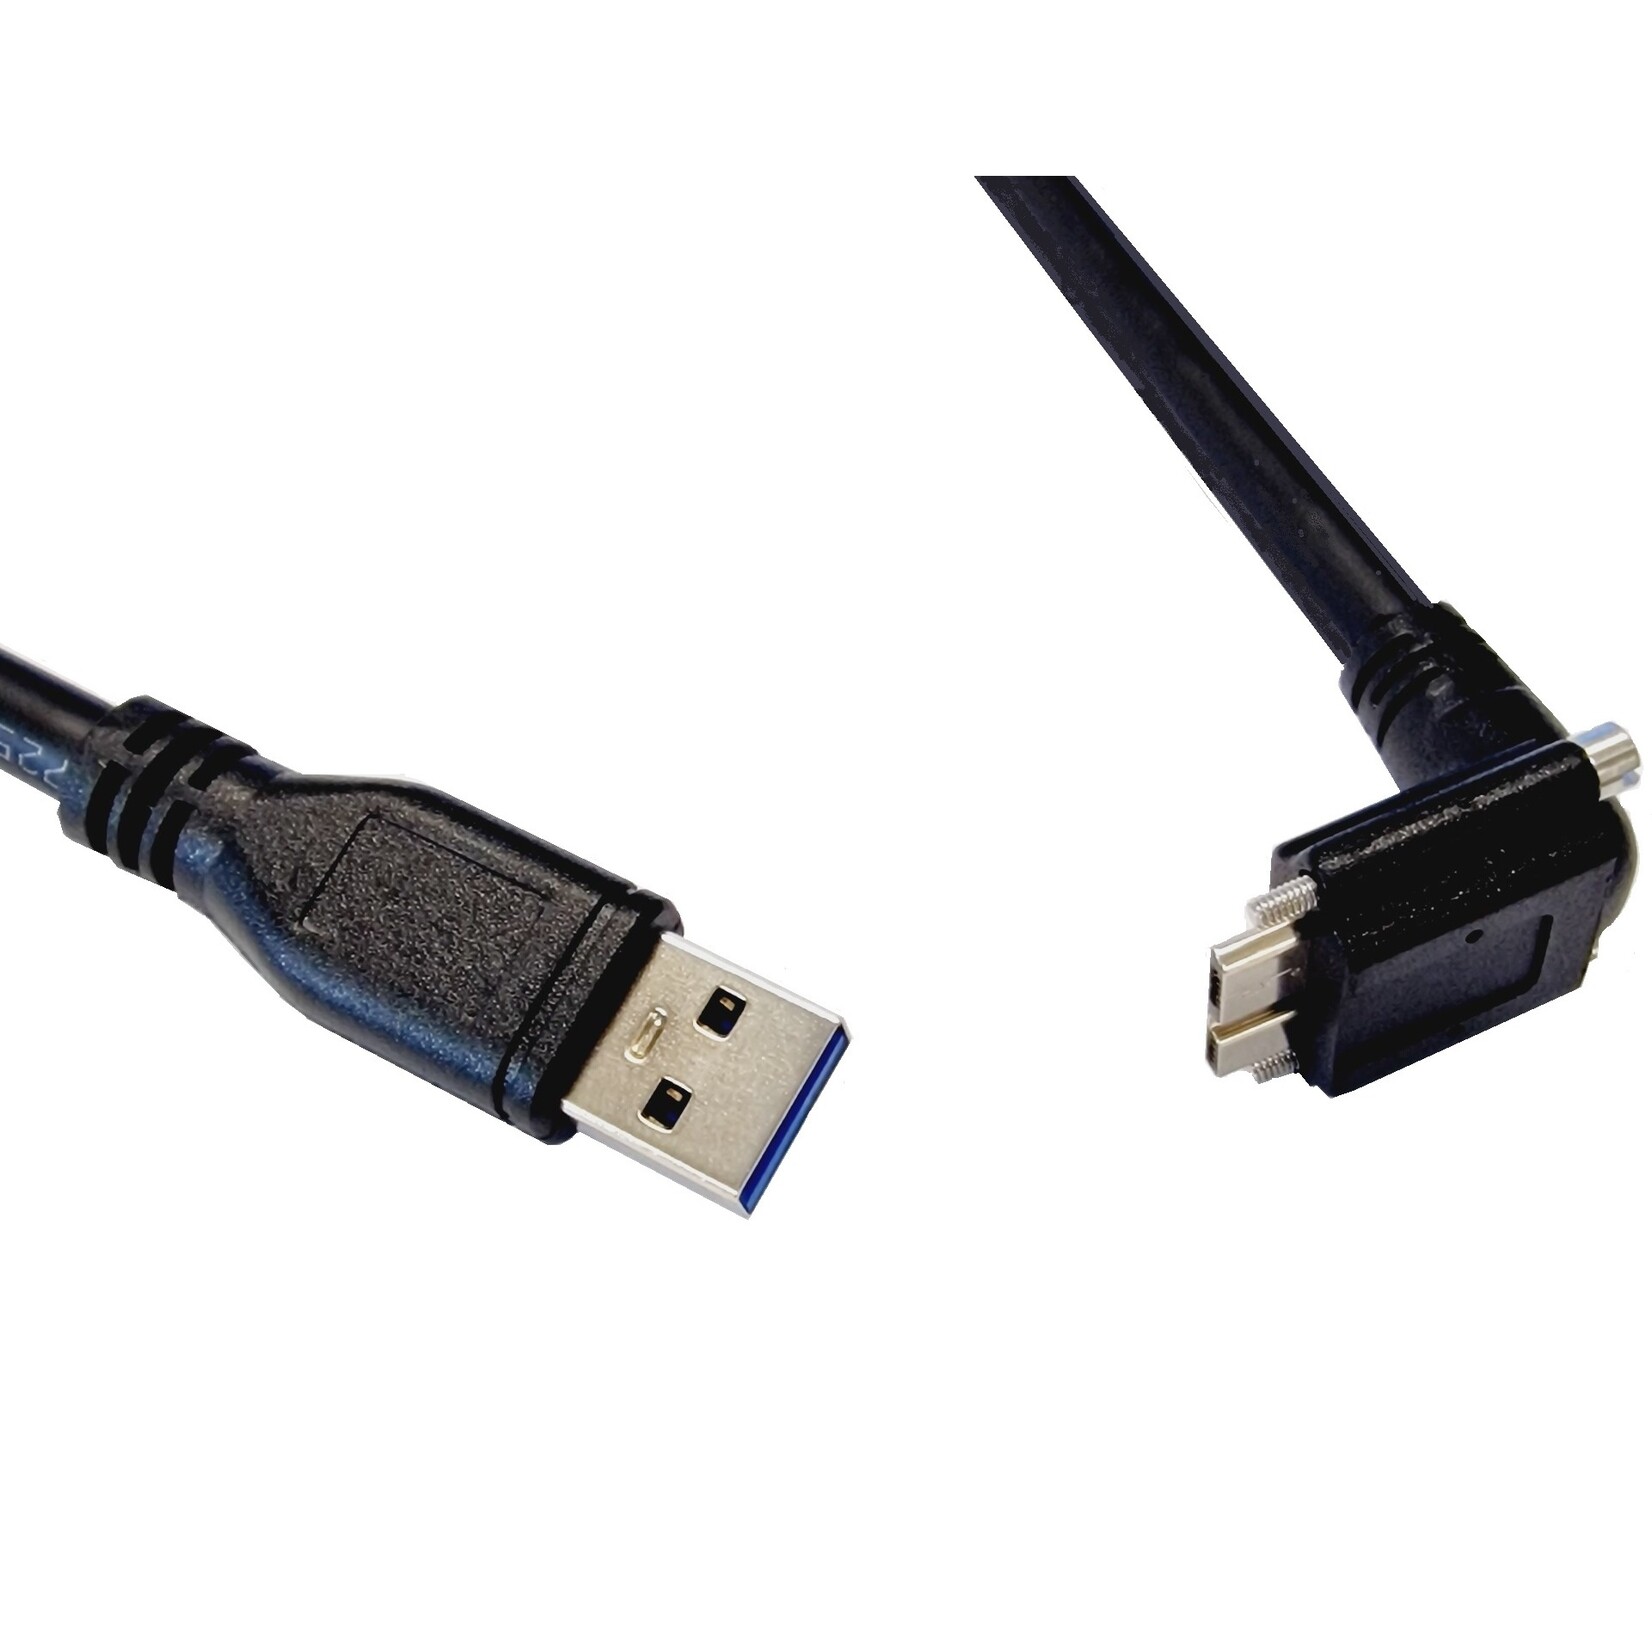 Câble USB 3 standard, USB Mico B avec vis coudé vers l'arrière en longueur de 3 mètres